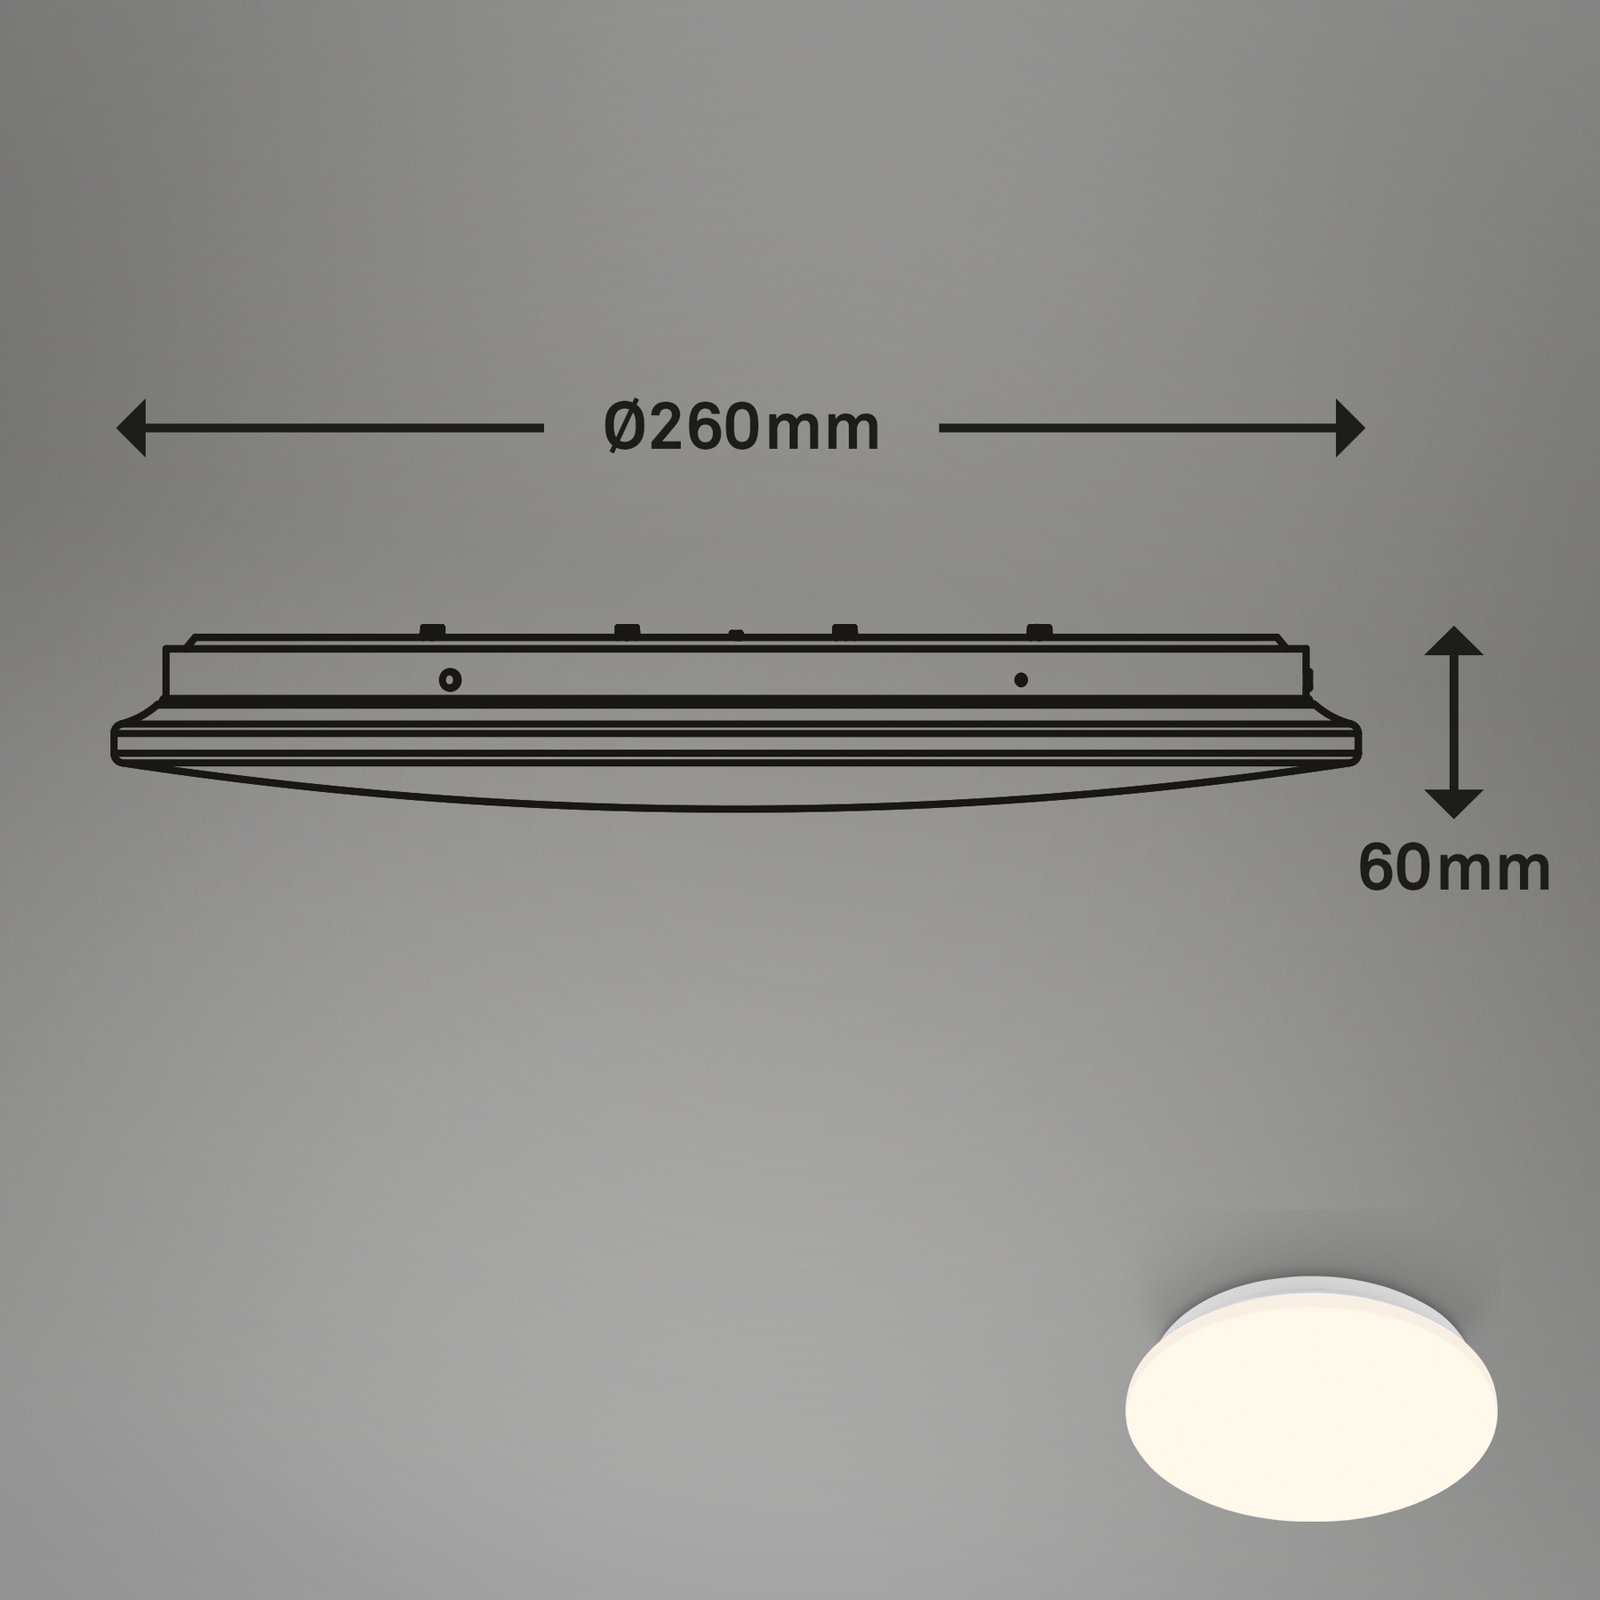 Lampa sufitowa Ekos z czujnikiem ruchu LED, Ø 26 cm